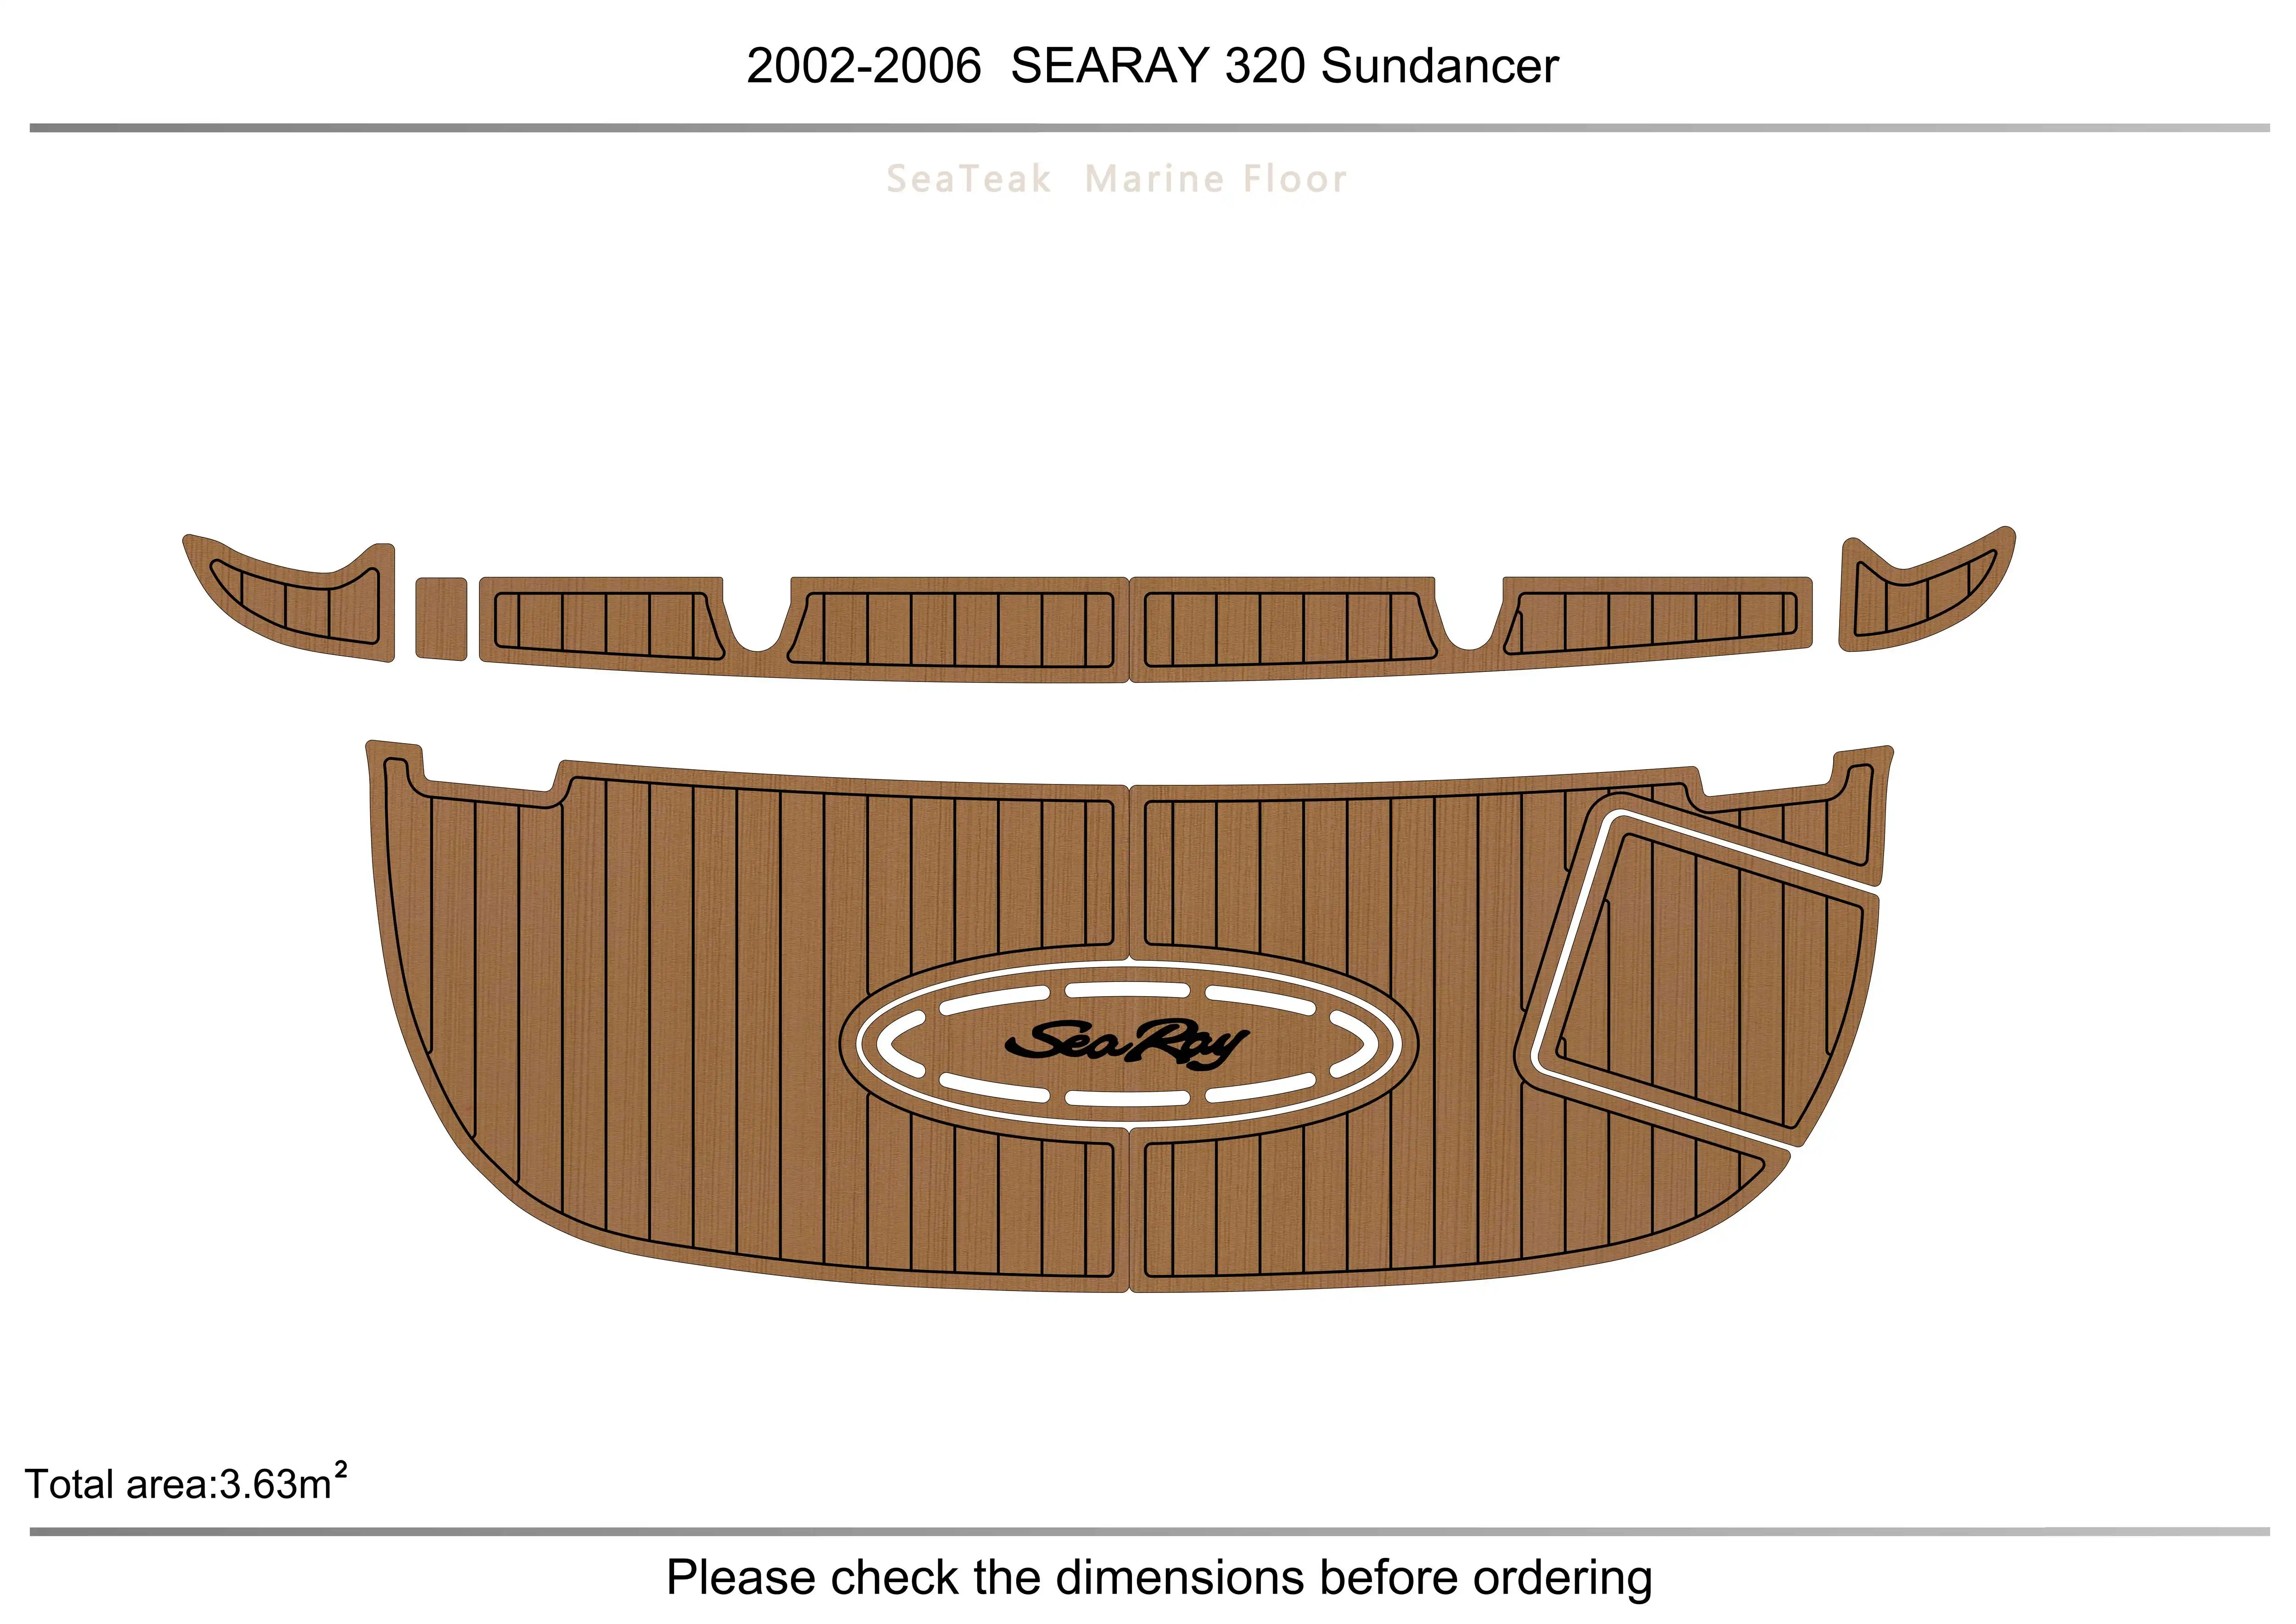 2006 Плавательная платформа Searay 320 Sundancer SP 1/4 